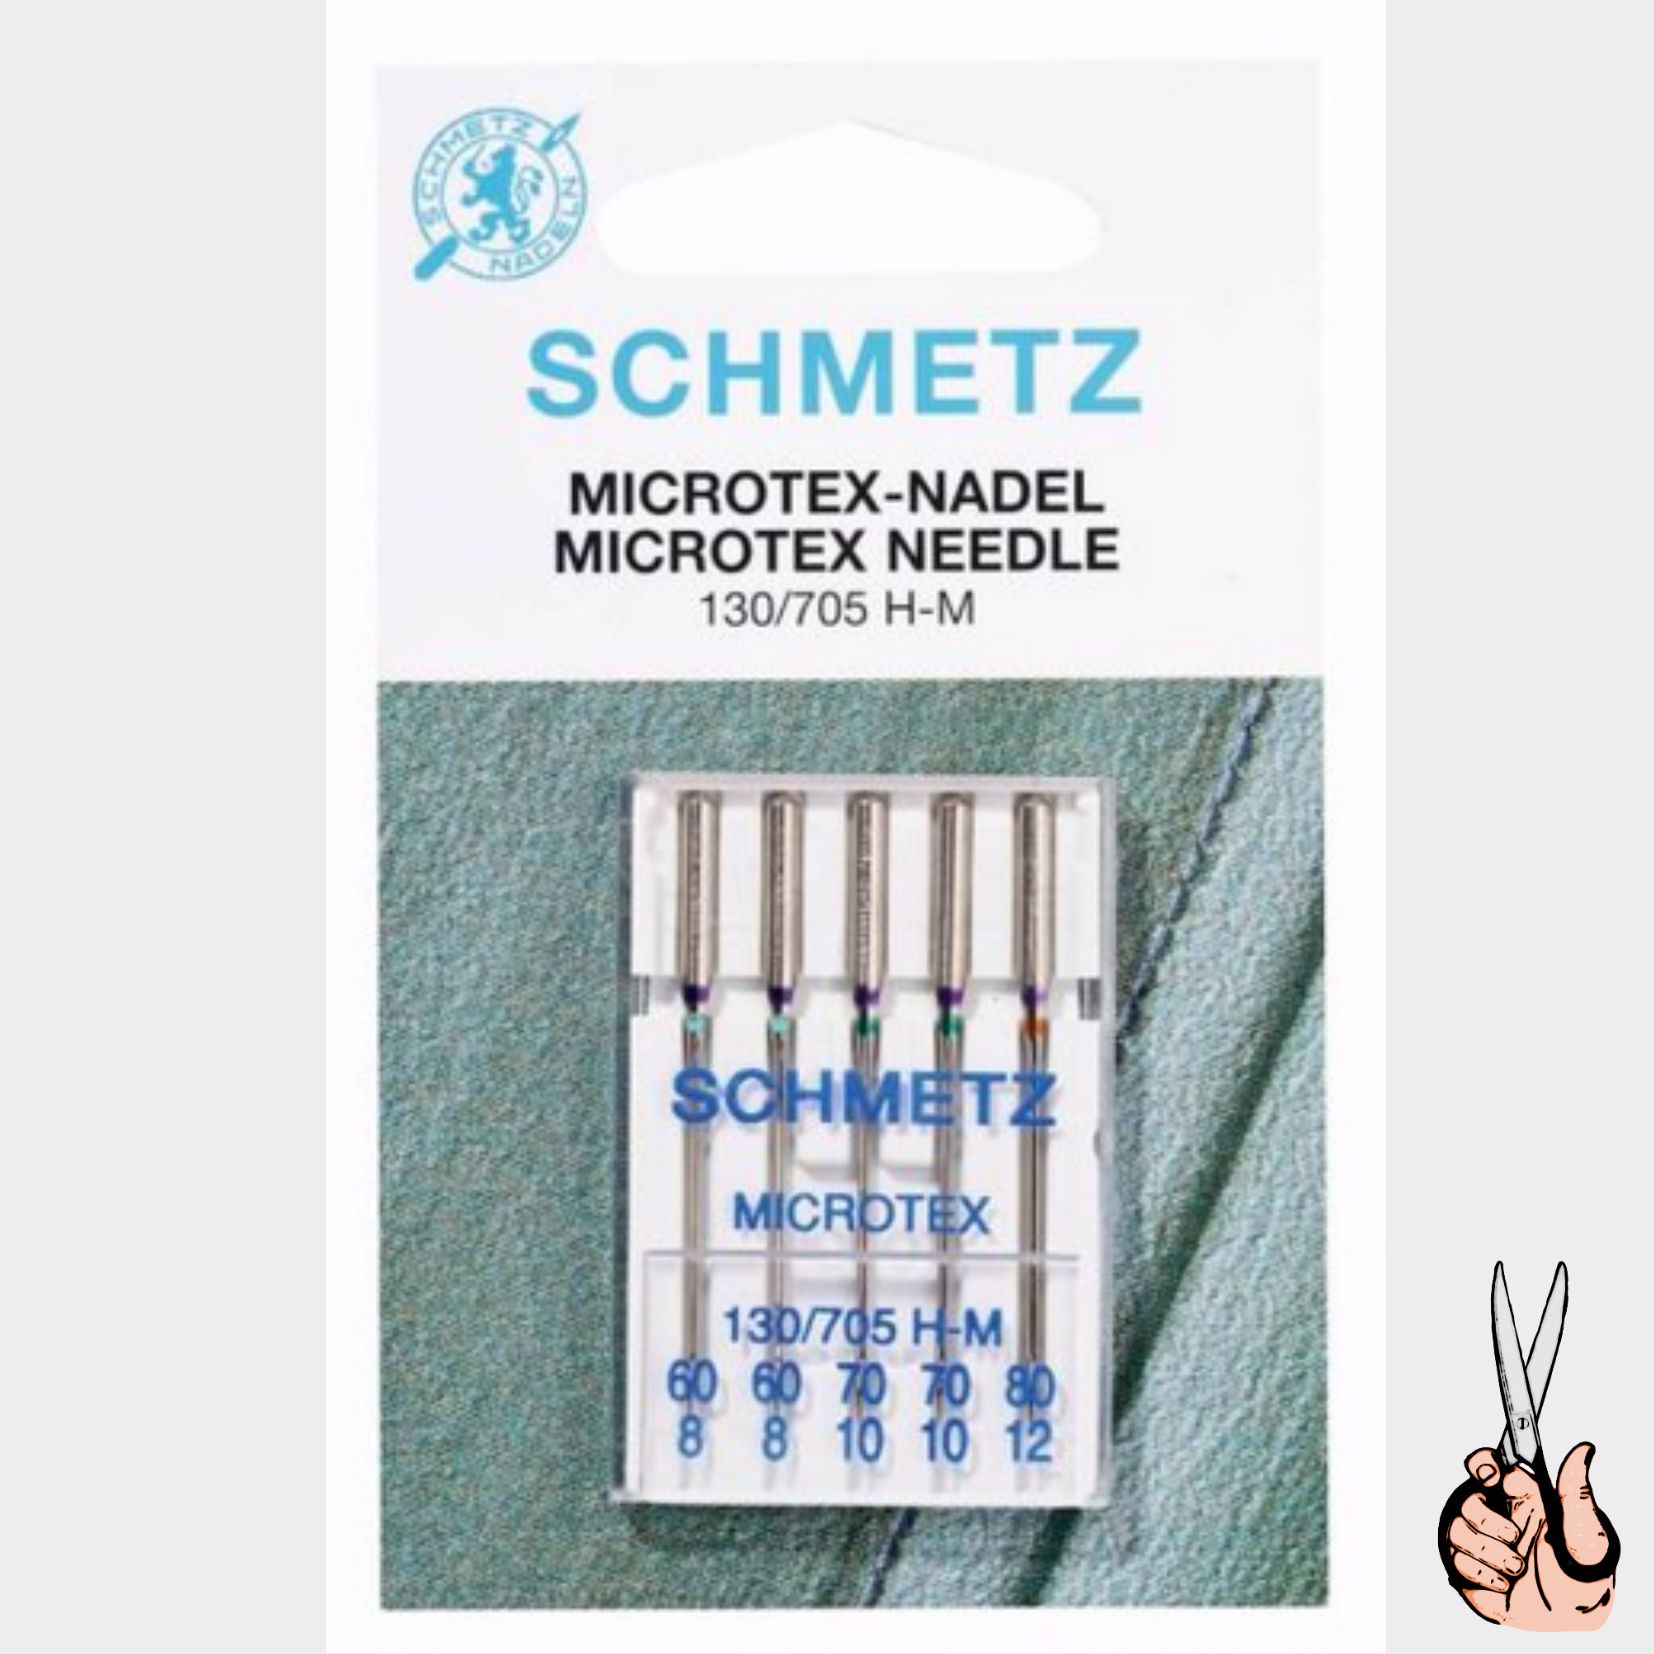 Schmetz Microtexnaalden 60 - 80